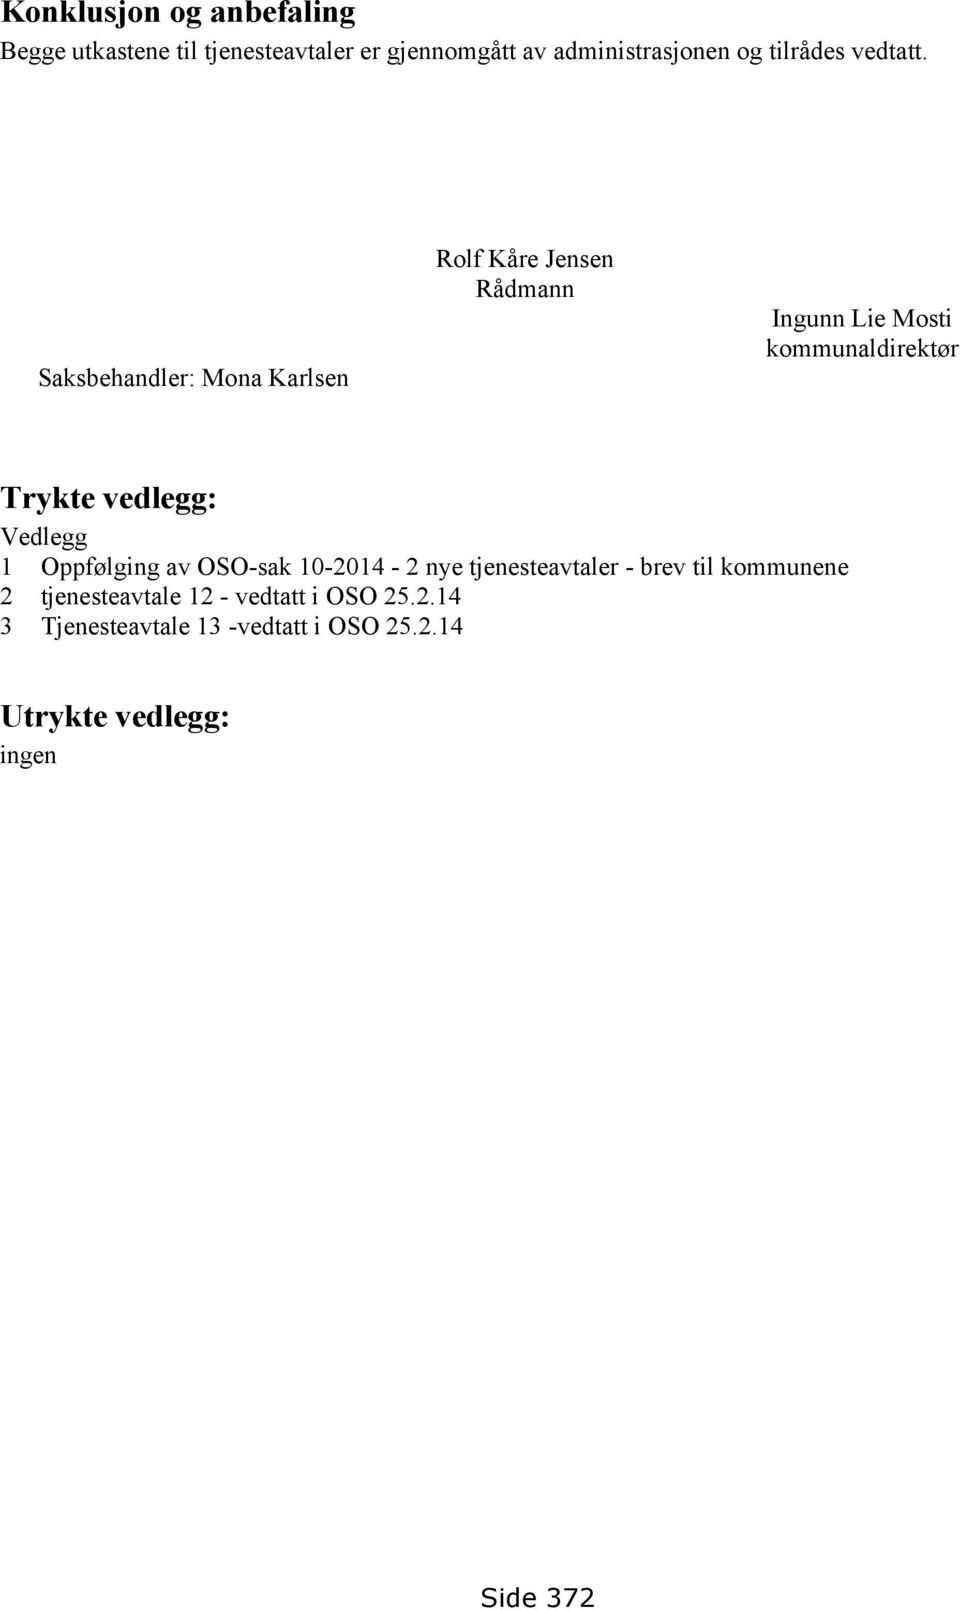 Saksbehandler: Mona Karlsen Rolf Kåre Jensen Rådmann Ingunn Lie Mosti kommunaldirektør Trykte vedlegg: